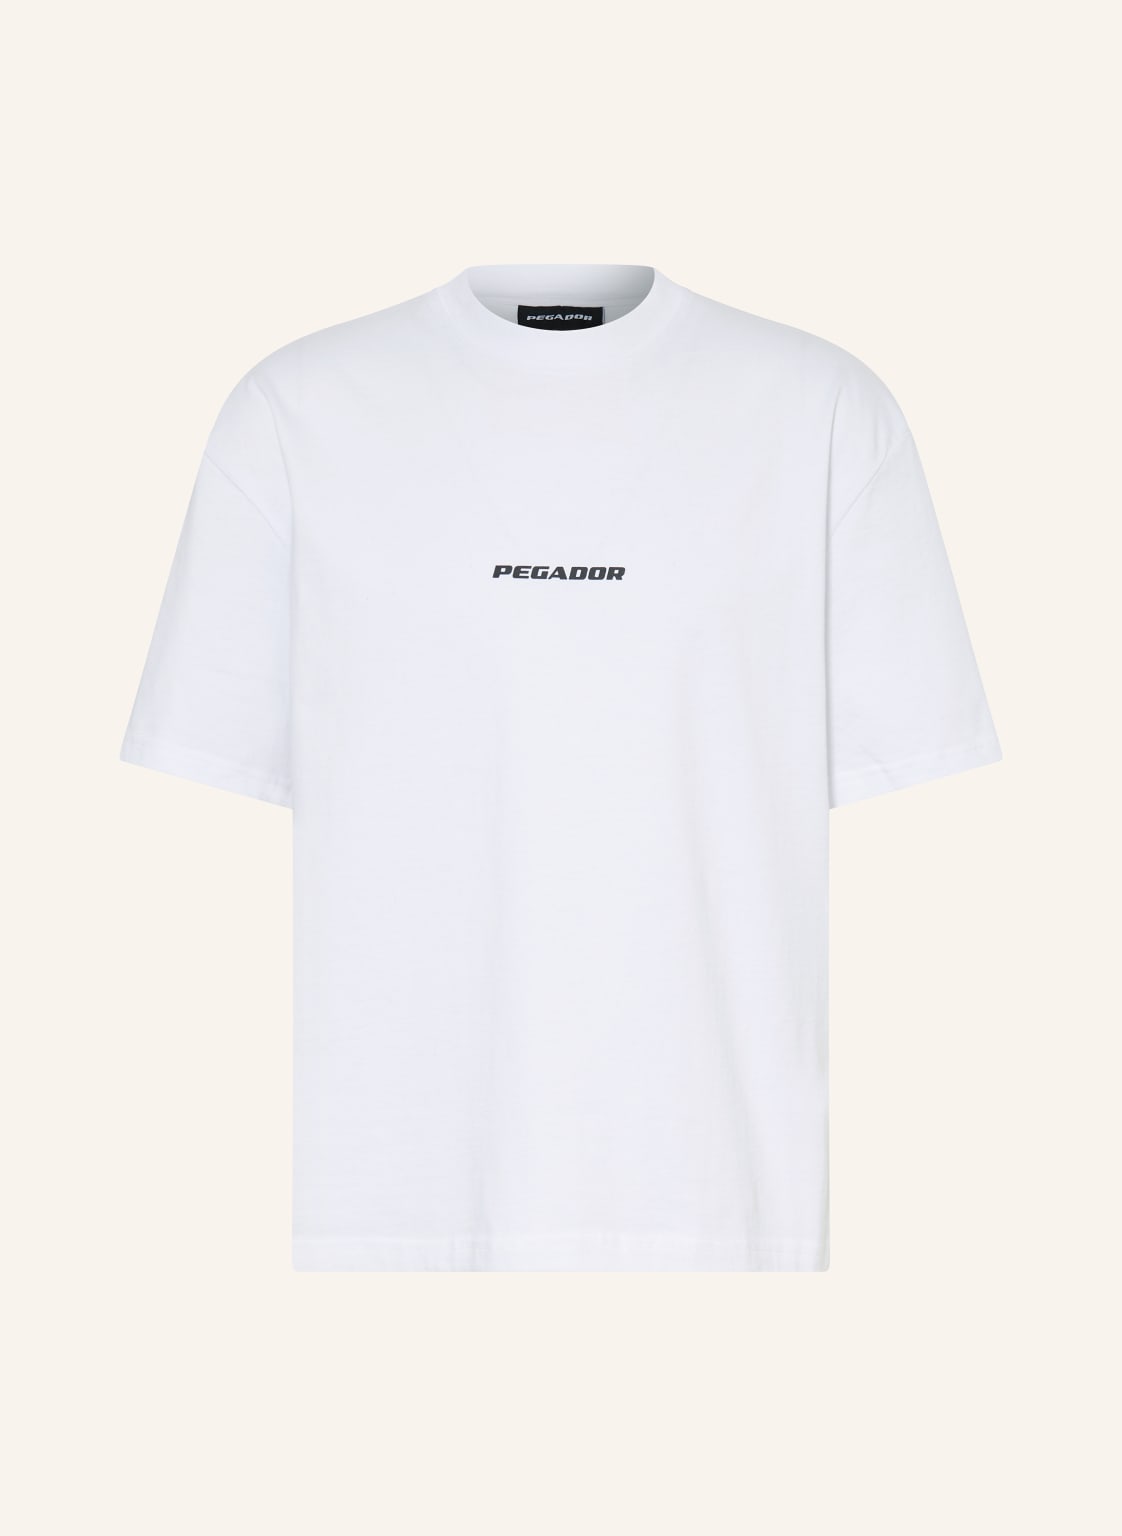 Pegador T-Shirt weiss von PEGADOR